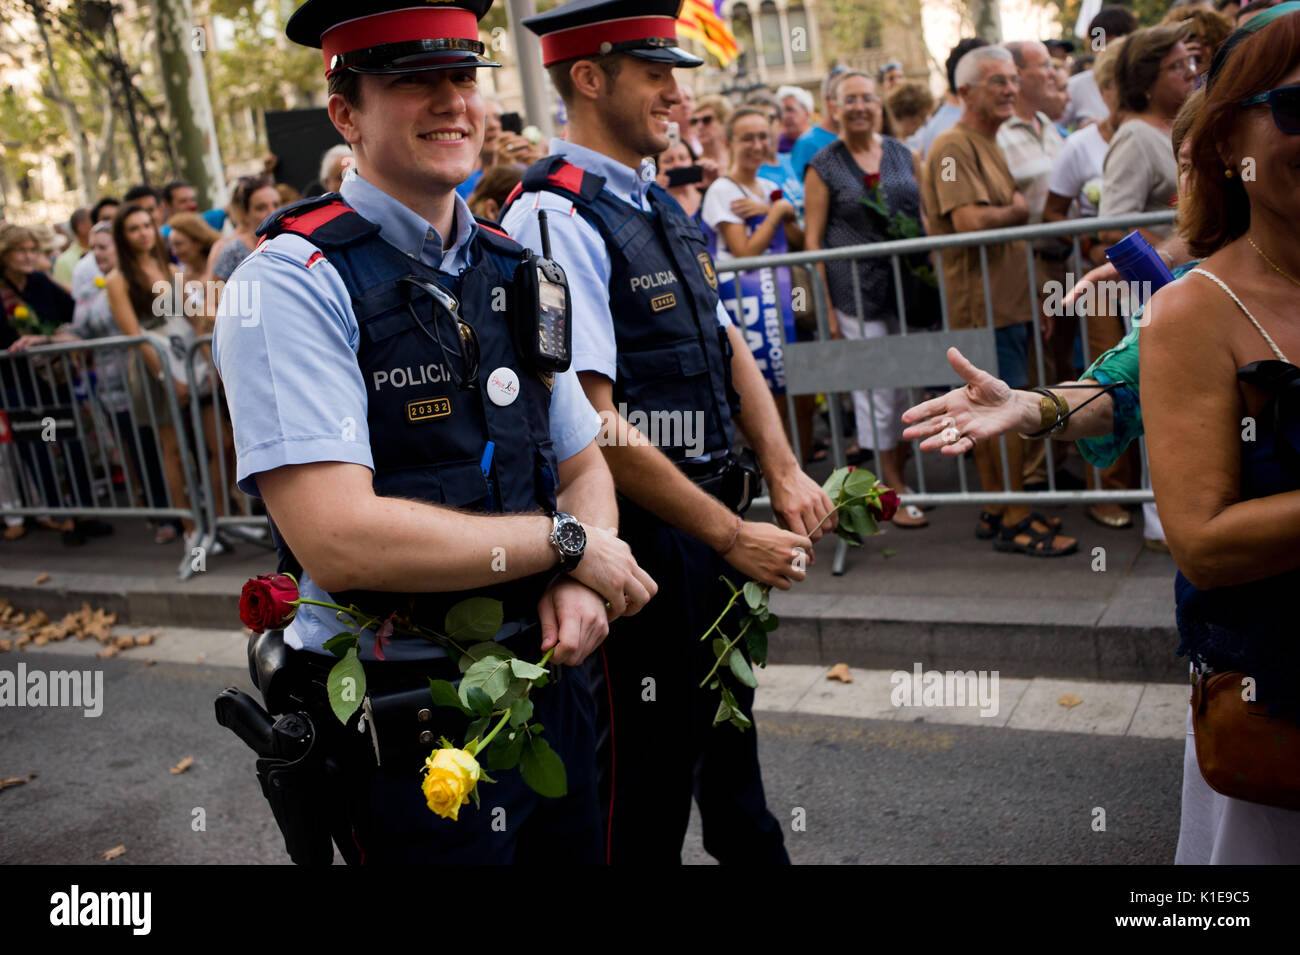 Barcelone, Espagne. Août 26, 2017. Les agents de police catalane à Barcelone recevoir roses et bonjour au cours d'une marche contre les attaques terroristes. Un demi-million de personnes ont manifesté dans les rues sous le slogan que nous n'avons pas peur après qu'une attaque terroriste dans la région de Las Ramblas de Barcelone et dans le village de Cambrils a tué 15 personnes la semaine dernière Crédit : Jordi Boixareu/Alamy Live News Banque D'Images